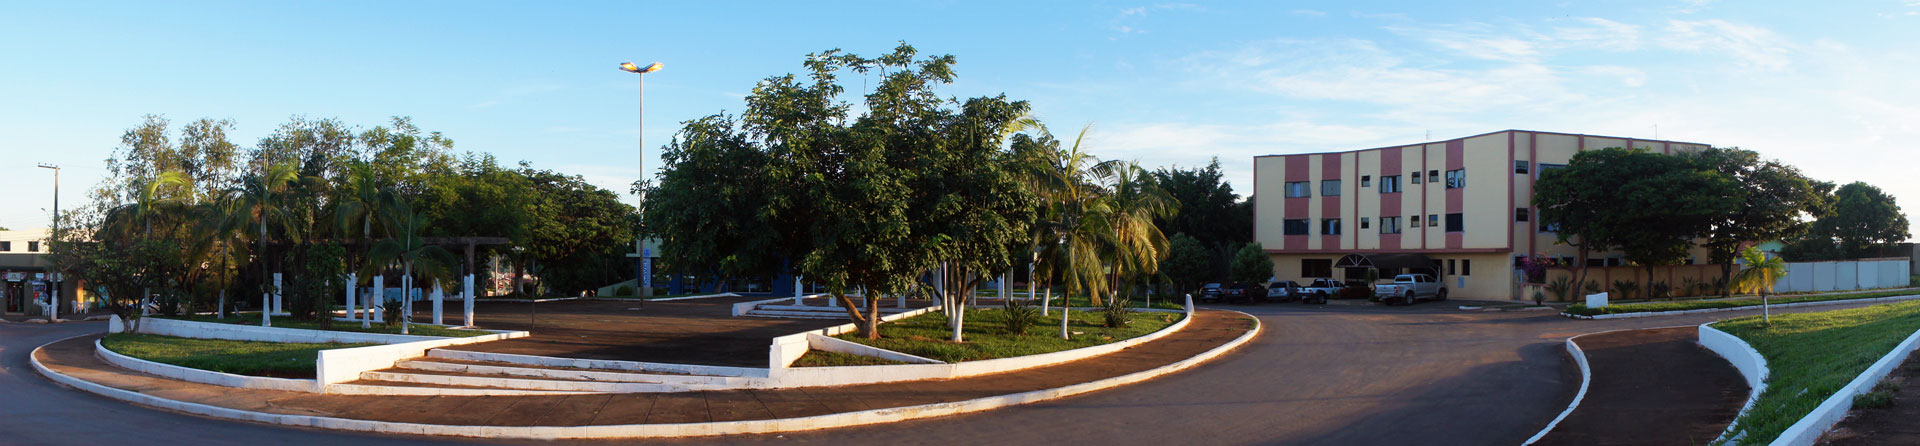 Foto panorâmica da praça Edgardo Abreu, localizada em frente ao Hotel Panorama de Abaeté